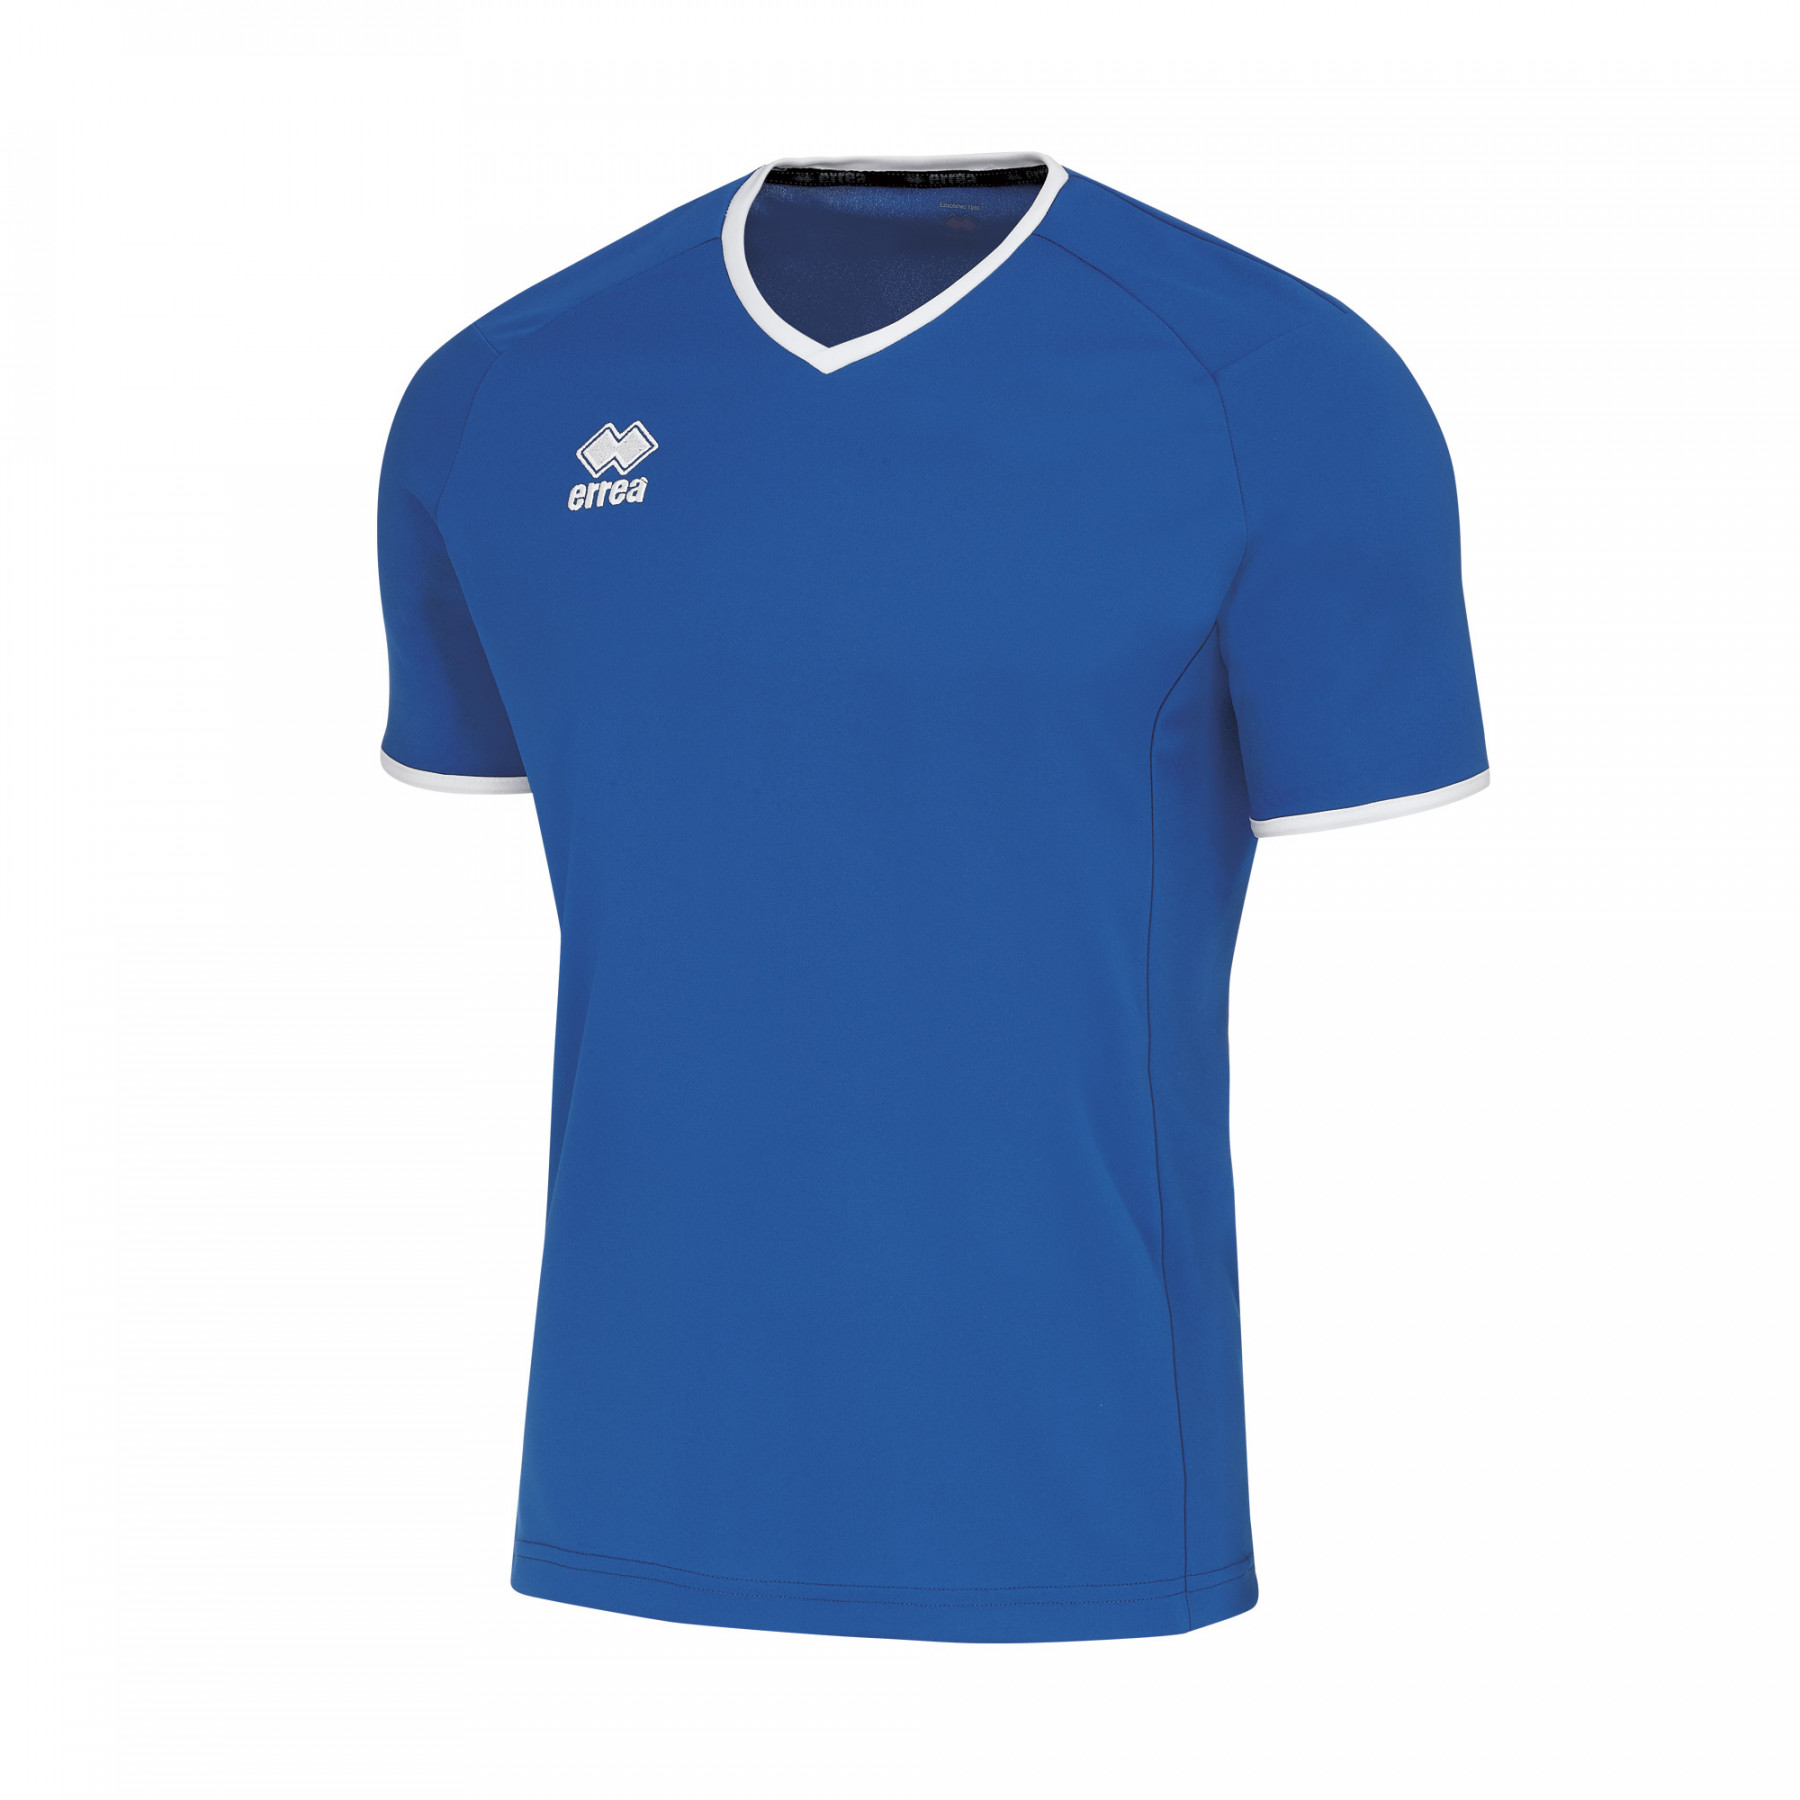 Волейбольная футболка мужская Errea LENNOX Синий/Белый